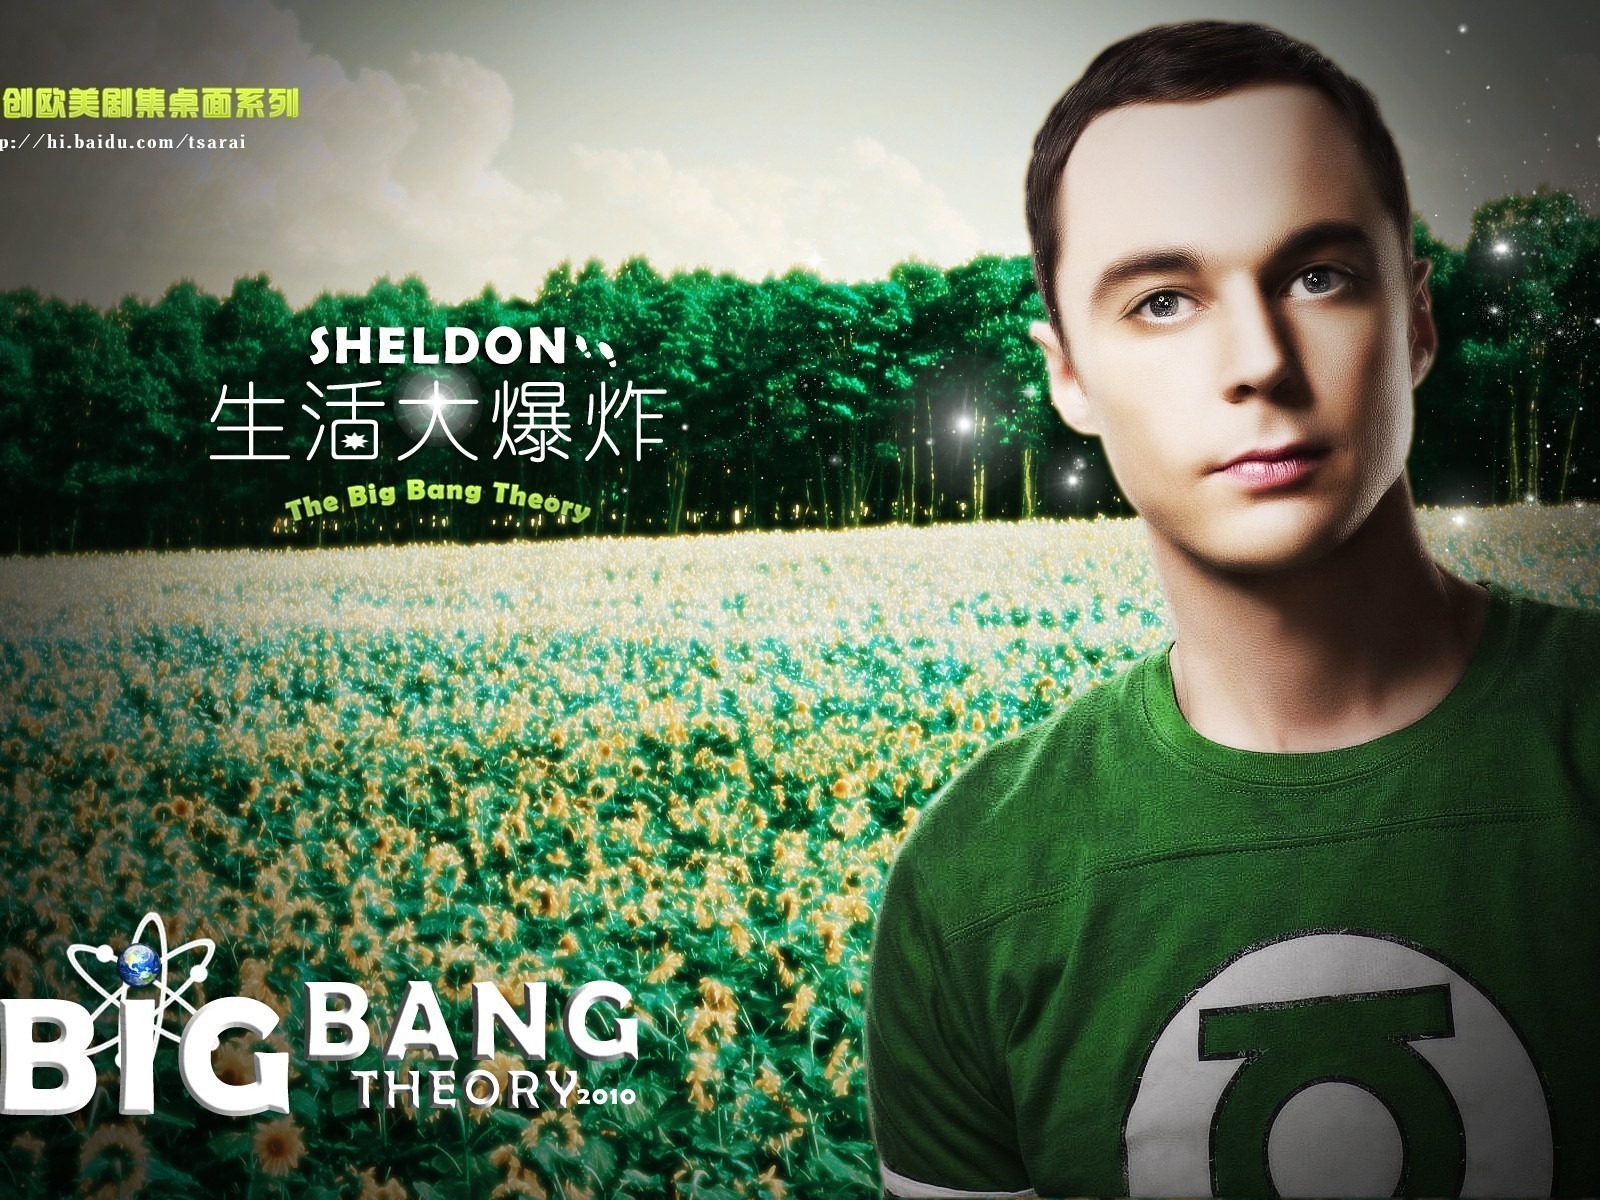 The Big Bang Theory 生活大爆炸電視劇高清壁紙 #16 - 1600x1200